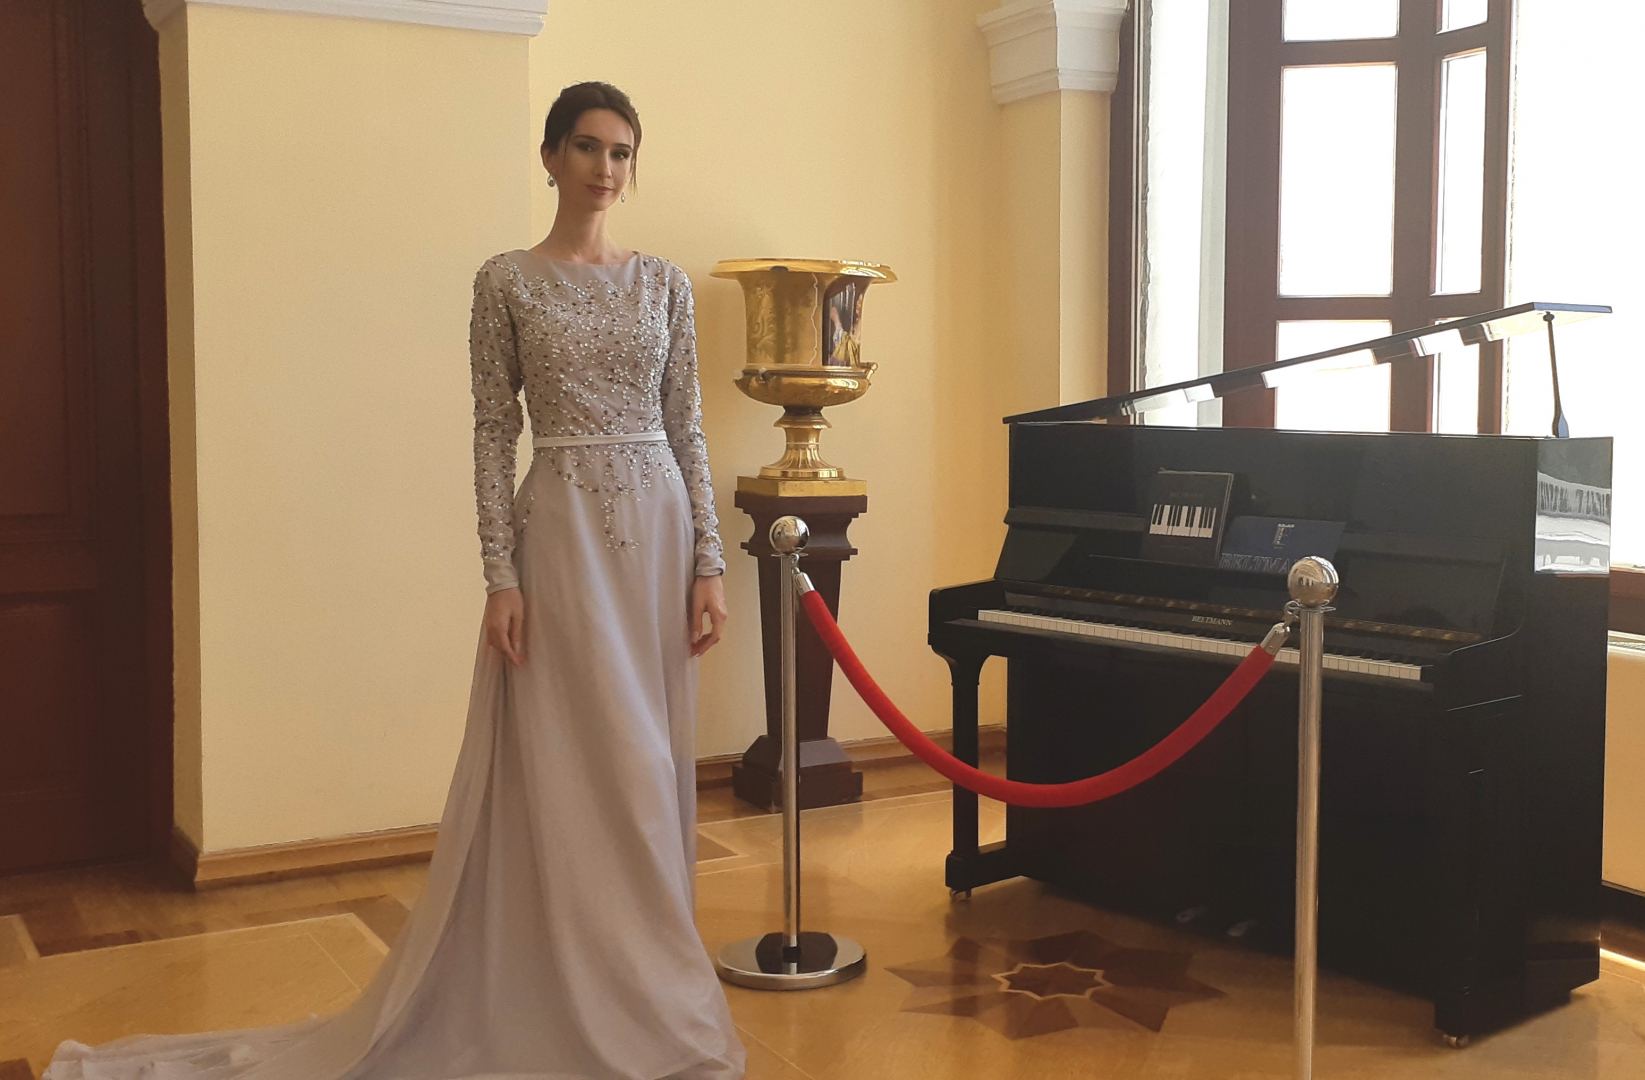 В Баку стартовал Международный конкурс вокалистов имени Бюльбюля (ФОТО)